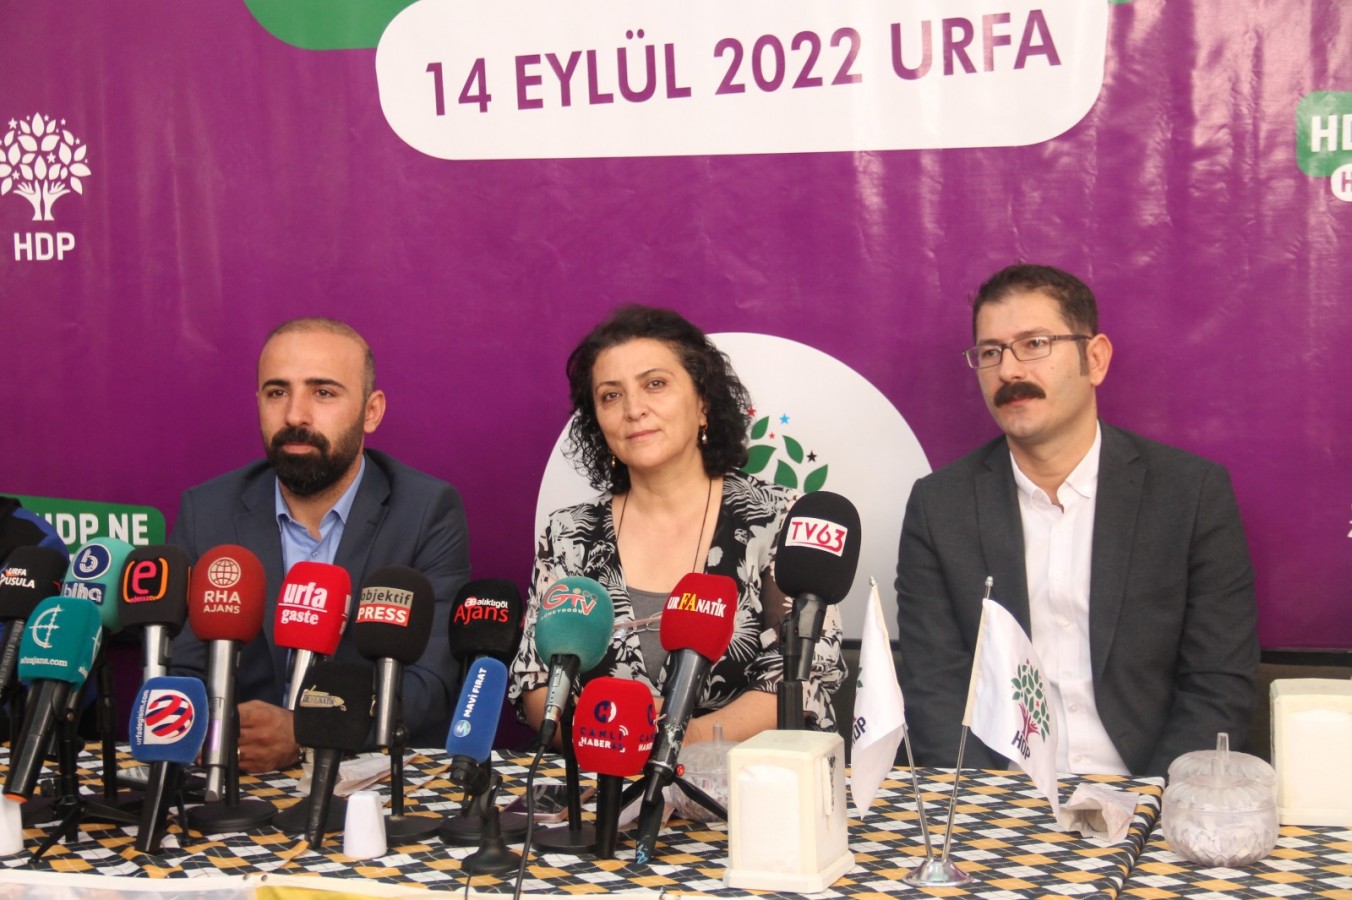 HDP Urfa İl Teşkilatı basınla buluştu!;